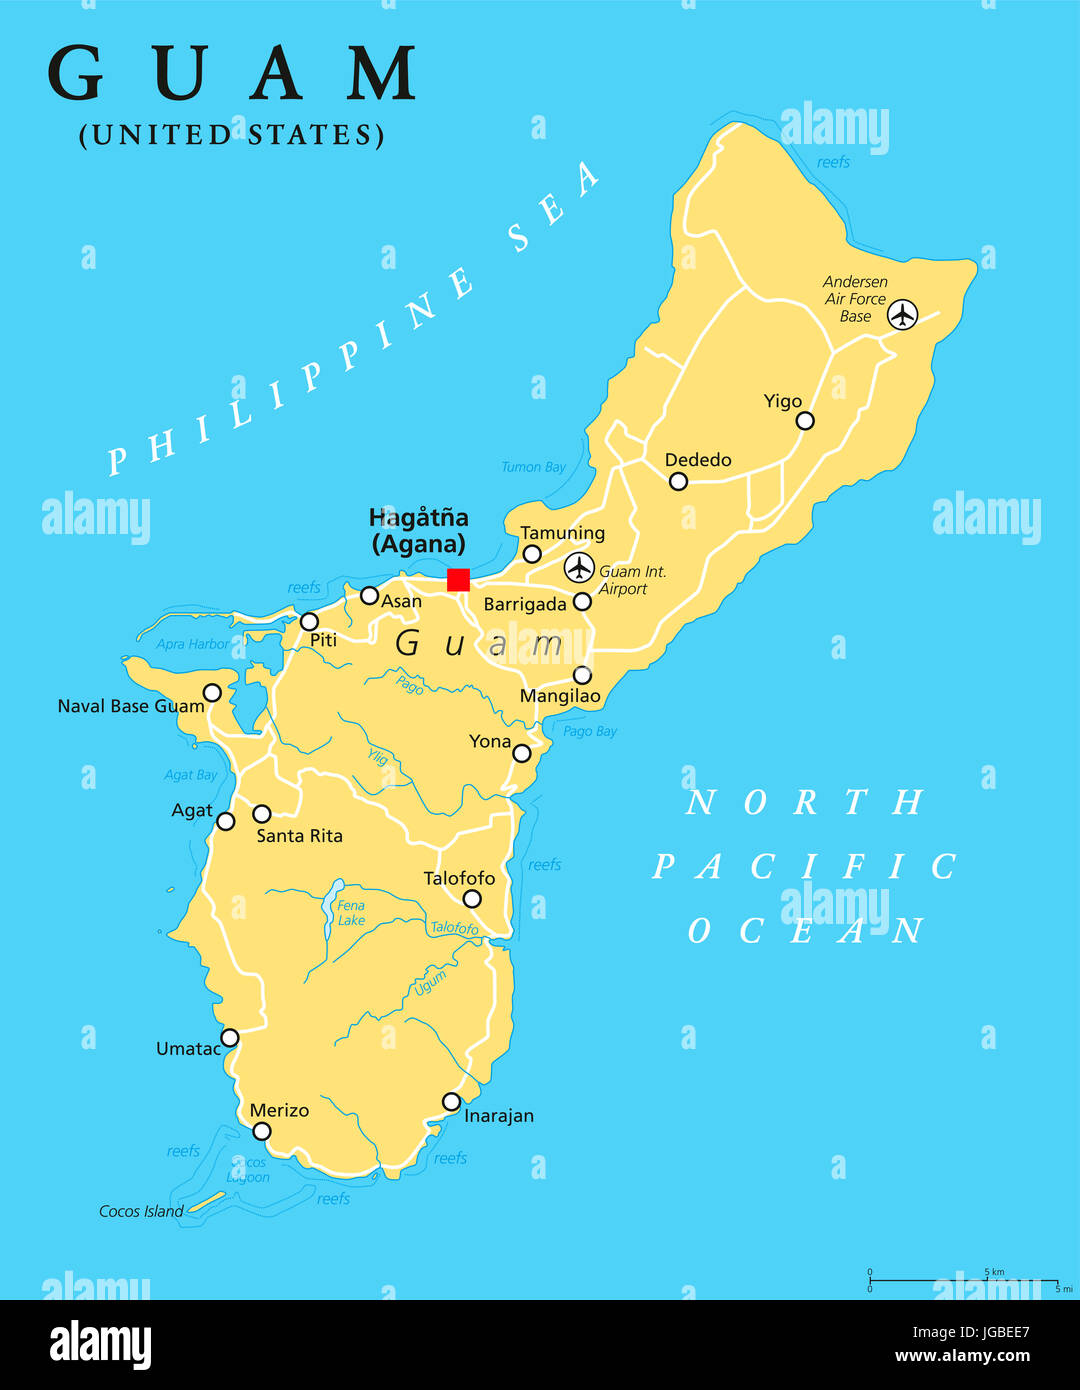 Guam politische Karte mit Hauptstadt Hagatna, Agana. Unincorporated, organisierte Territorium der Vereinigten Staaten im Pazifischen Ozean. Marianen-Inseln. Stockfoto